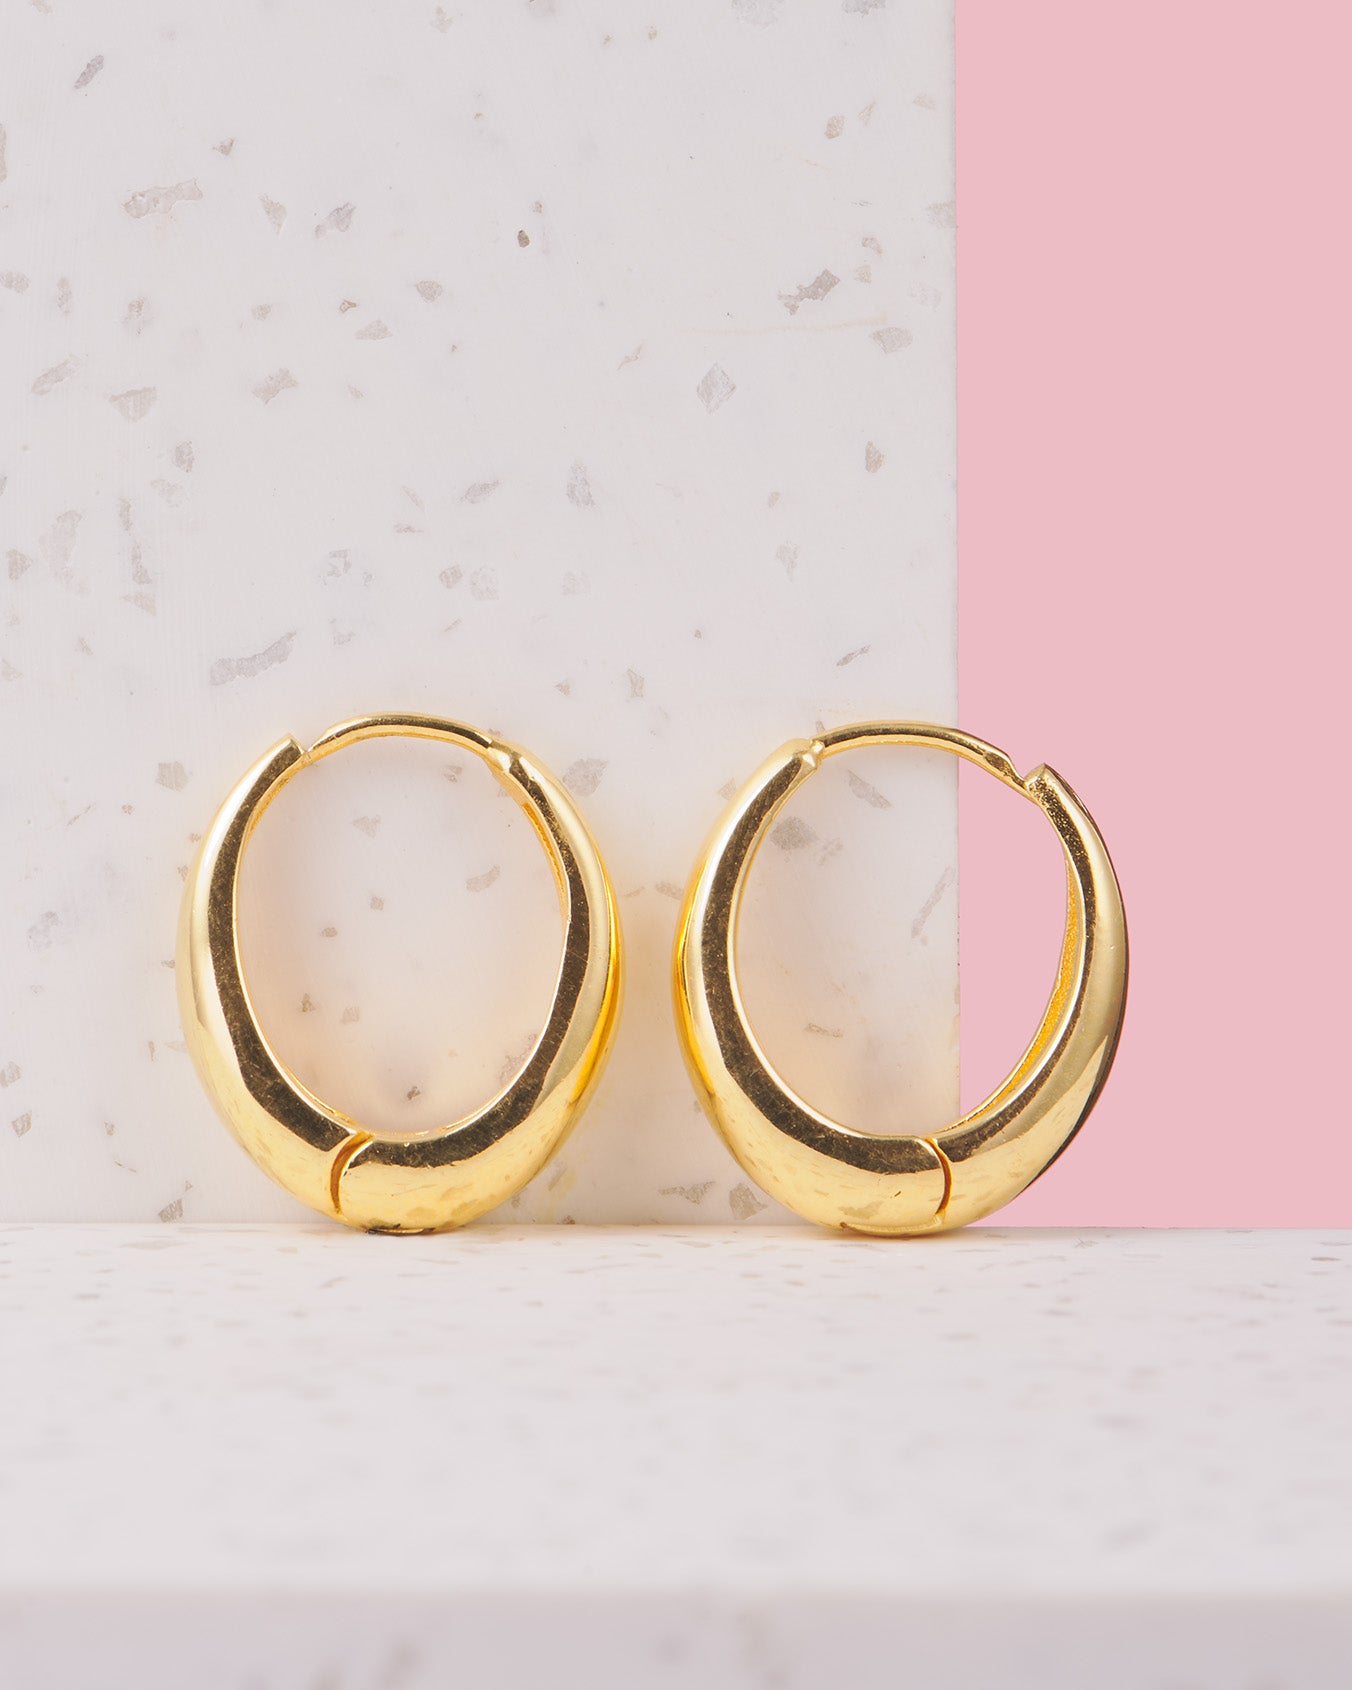 Goldener Ohrring Tropfenform | Ohrringe wasserfest | 925 Sterling Silber | Schmuck online kaufen | Geschenk für Freundin finden | VERLAN Jewellery